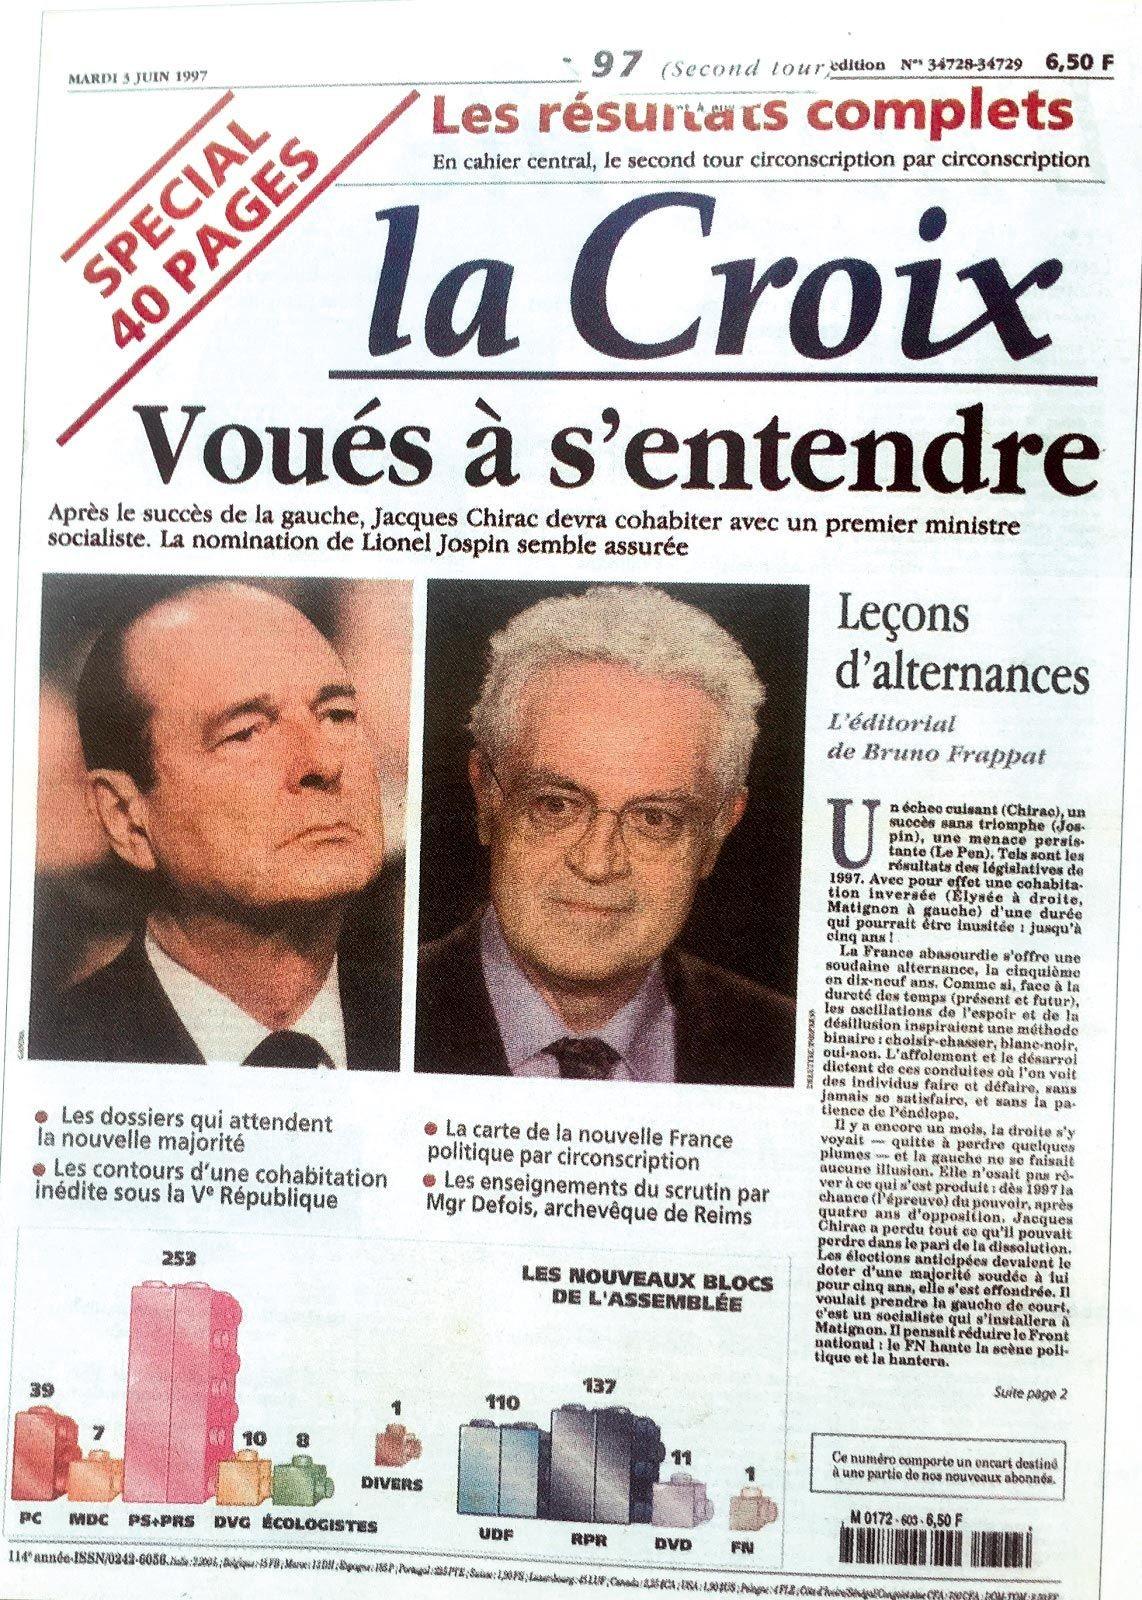 Une du journal La Croix, 3 juin 1997.